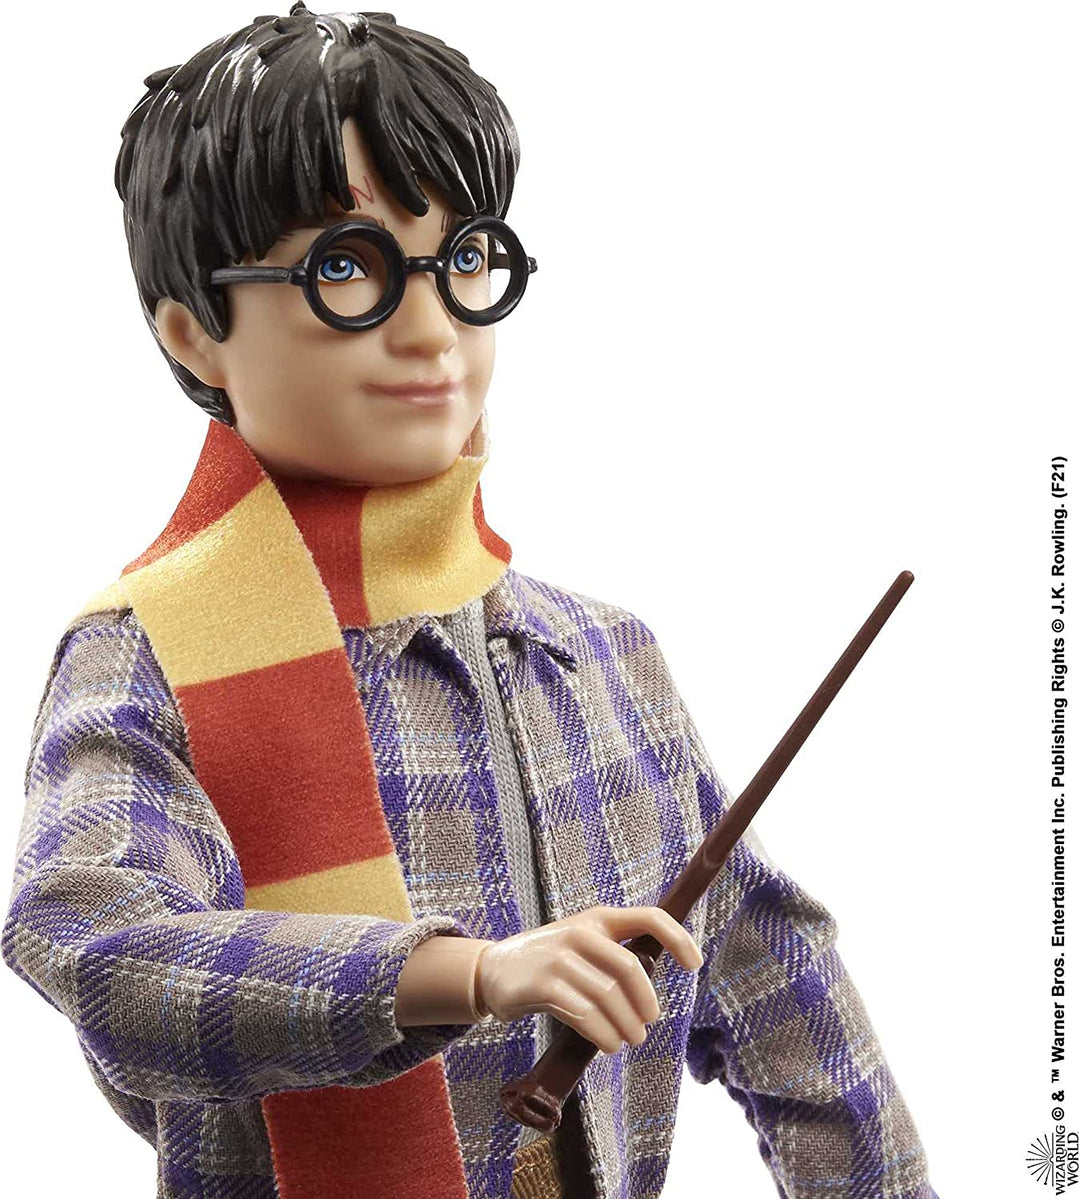 Harry Potter verzamelplatform 9 3/4 pop (10-inch), beweegbaar, draagt reismode, met Hedwig, bagage en accessoires